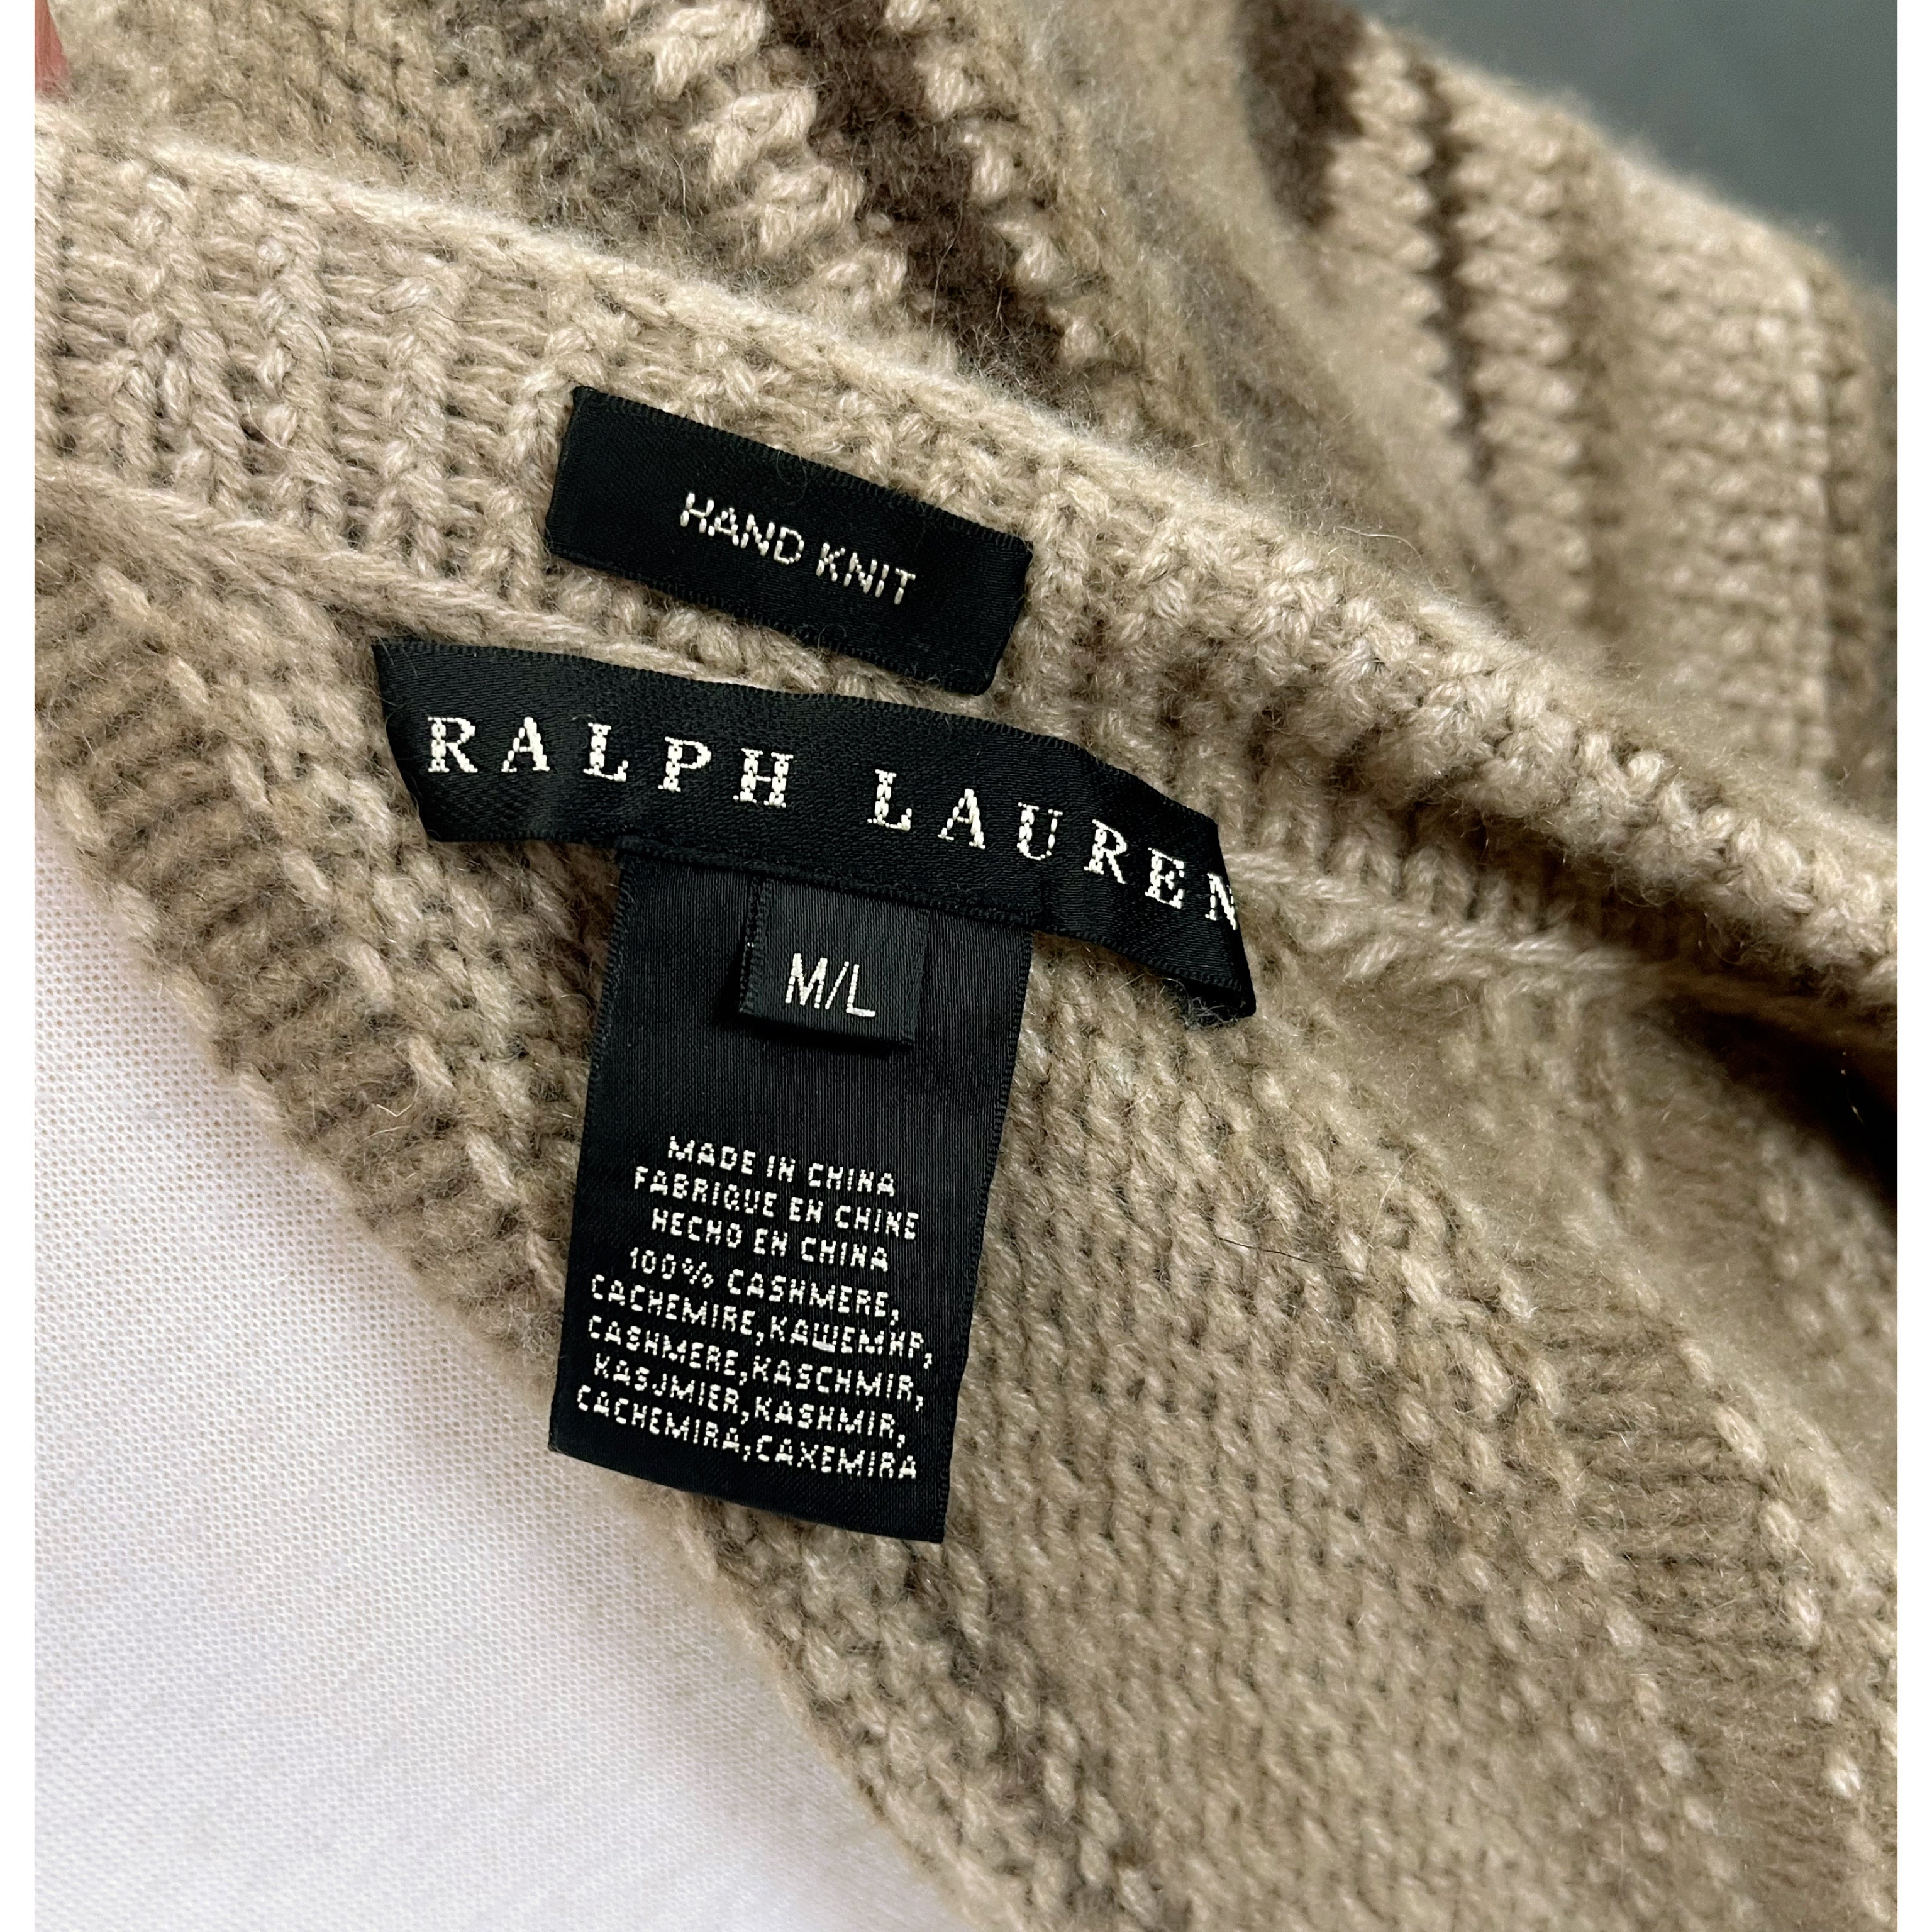 Ralph Lauren mocha cashmere sweater, size M/L